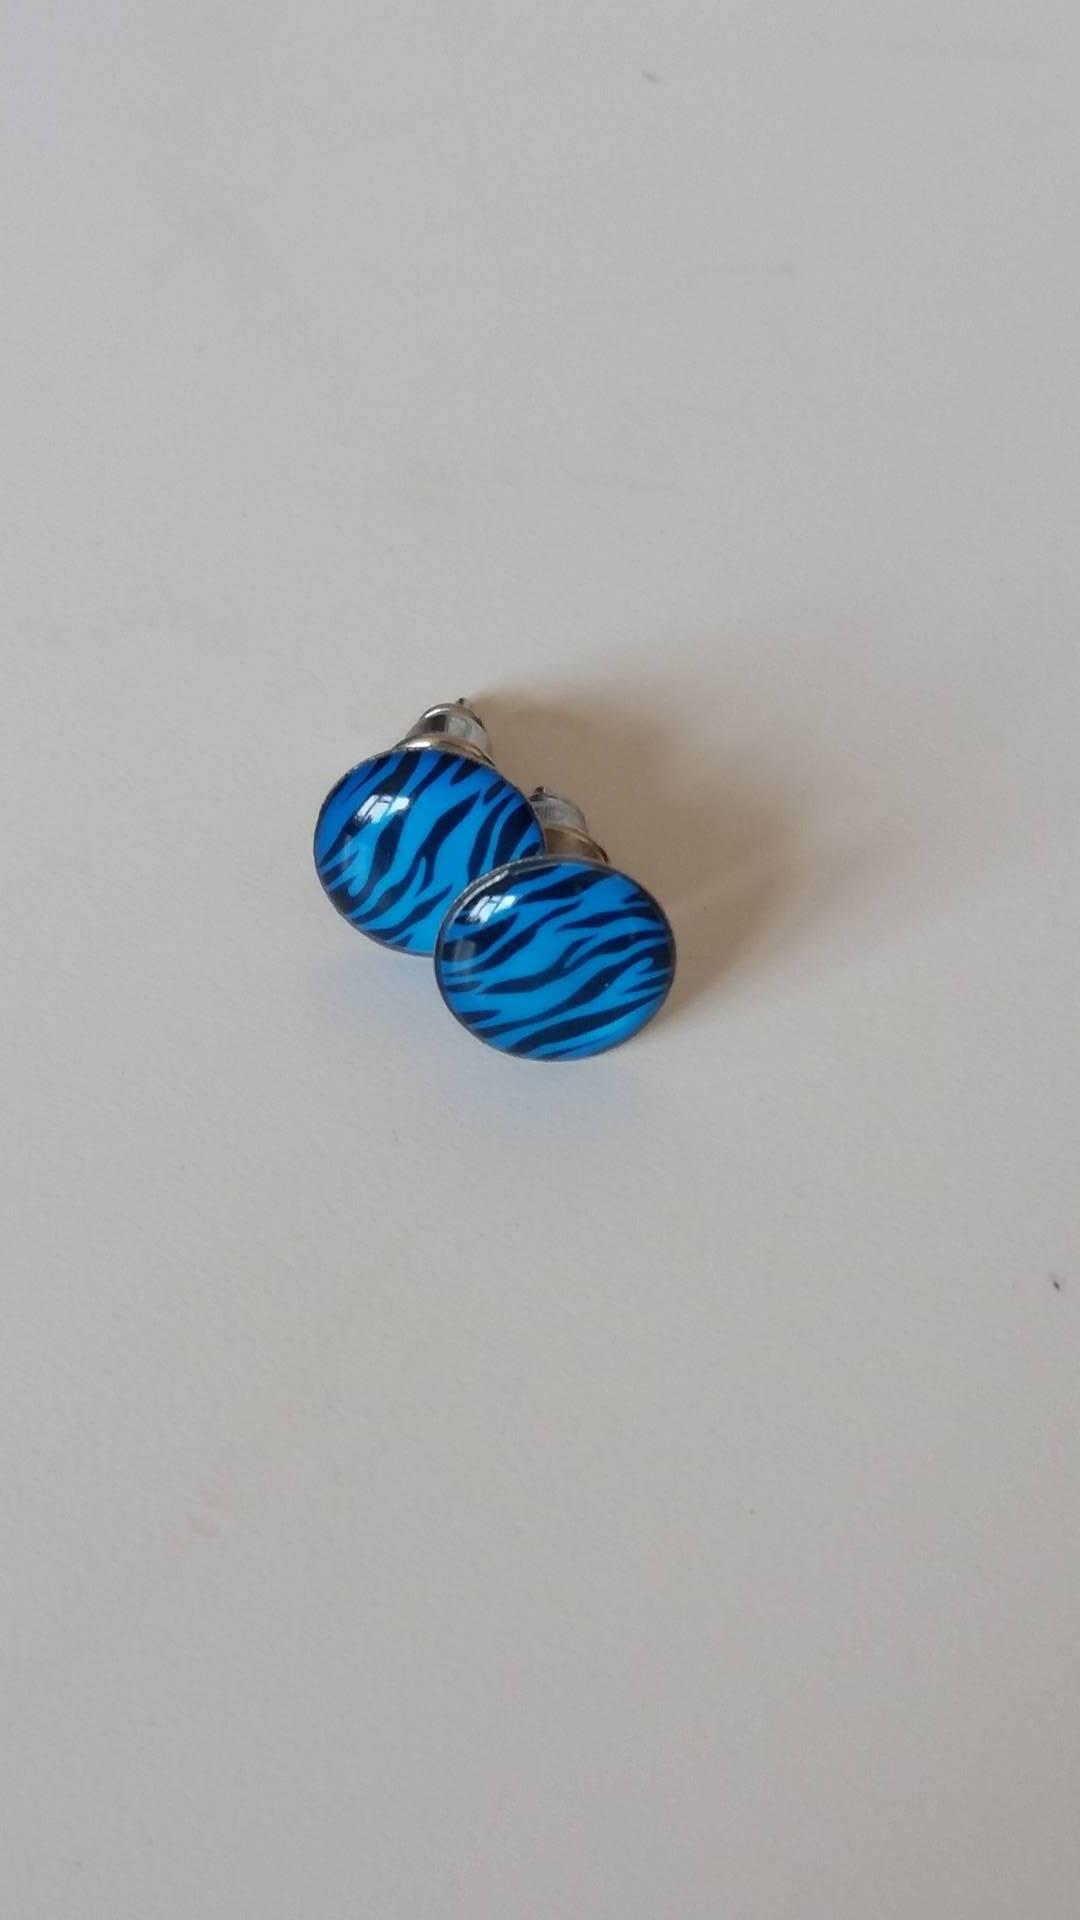 Blue swirl round earrings